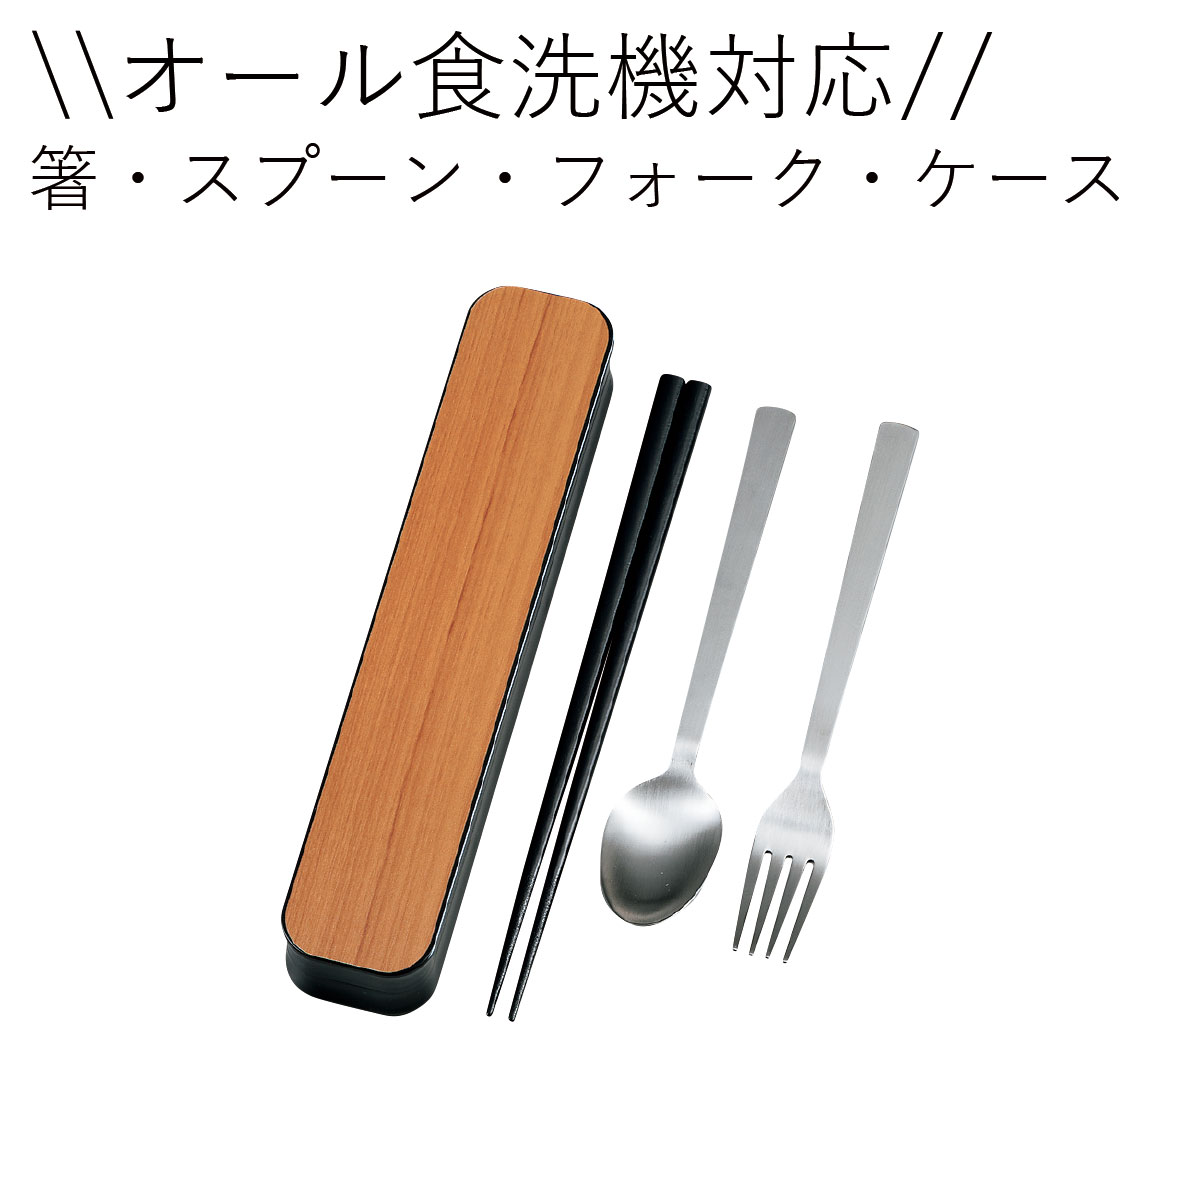 箸 スプーン フォークセット3点セット”HAKOYA 大人のカトラリー”GRAIN グレイン 木目日本製お弁当箱 おしゃれ LUNCH GOODS